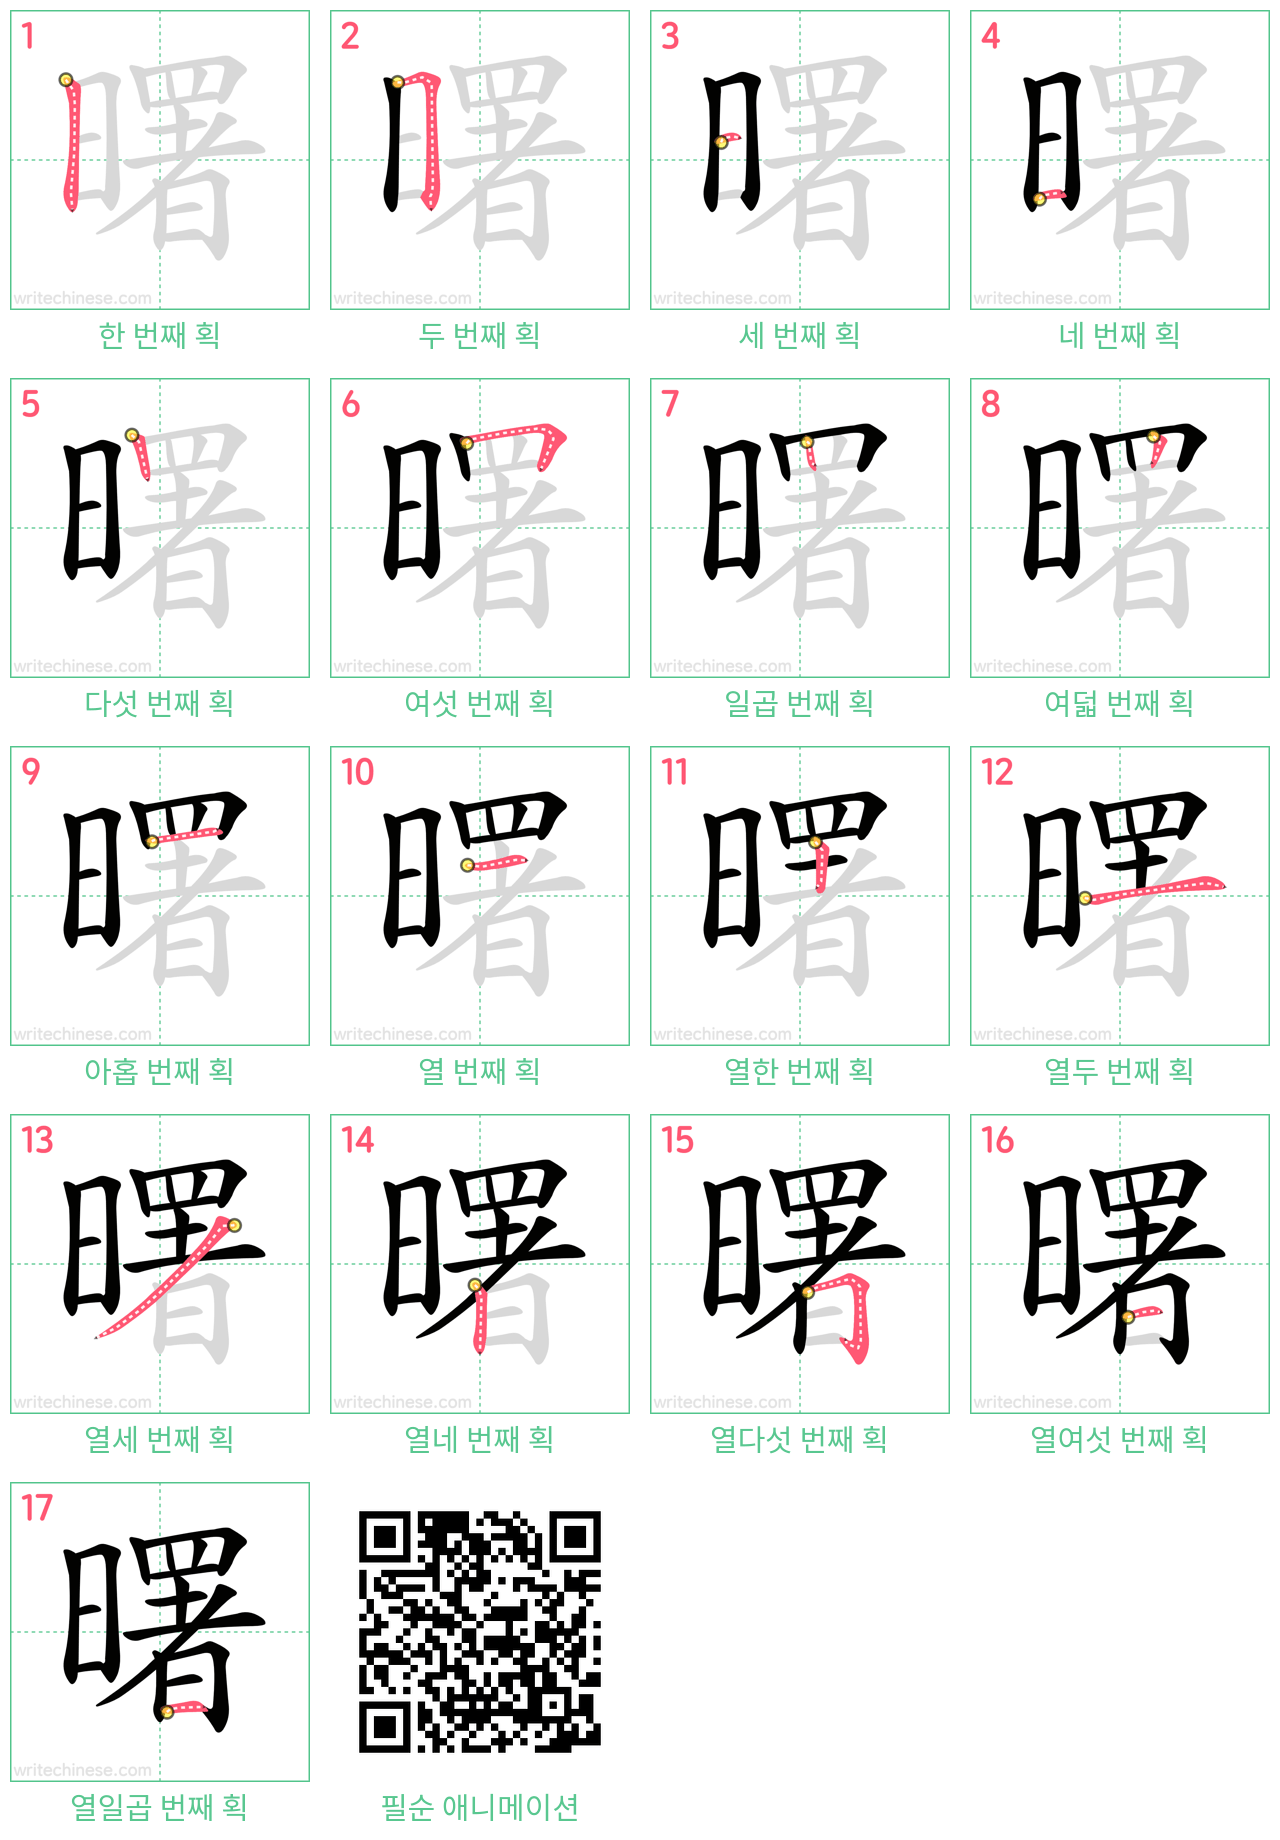 曙 step-by-step stroke order diagrams